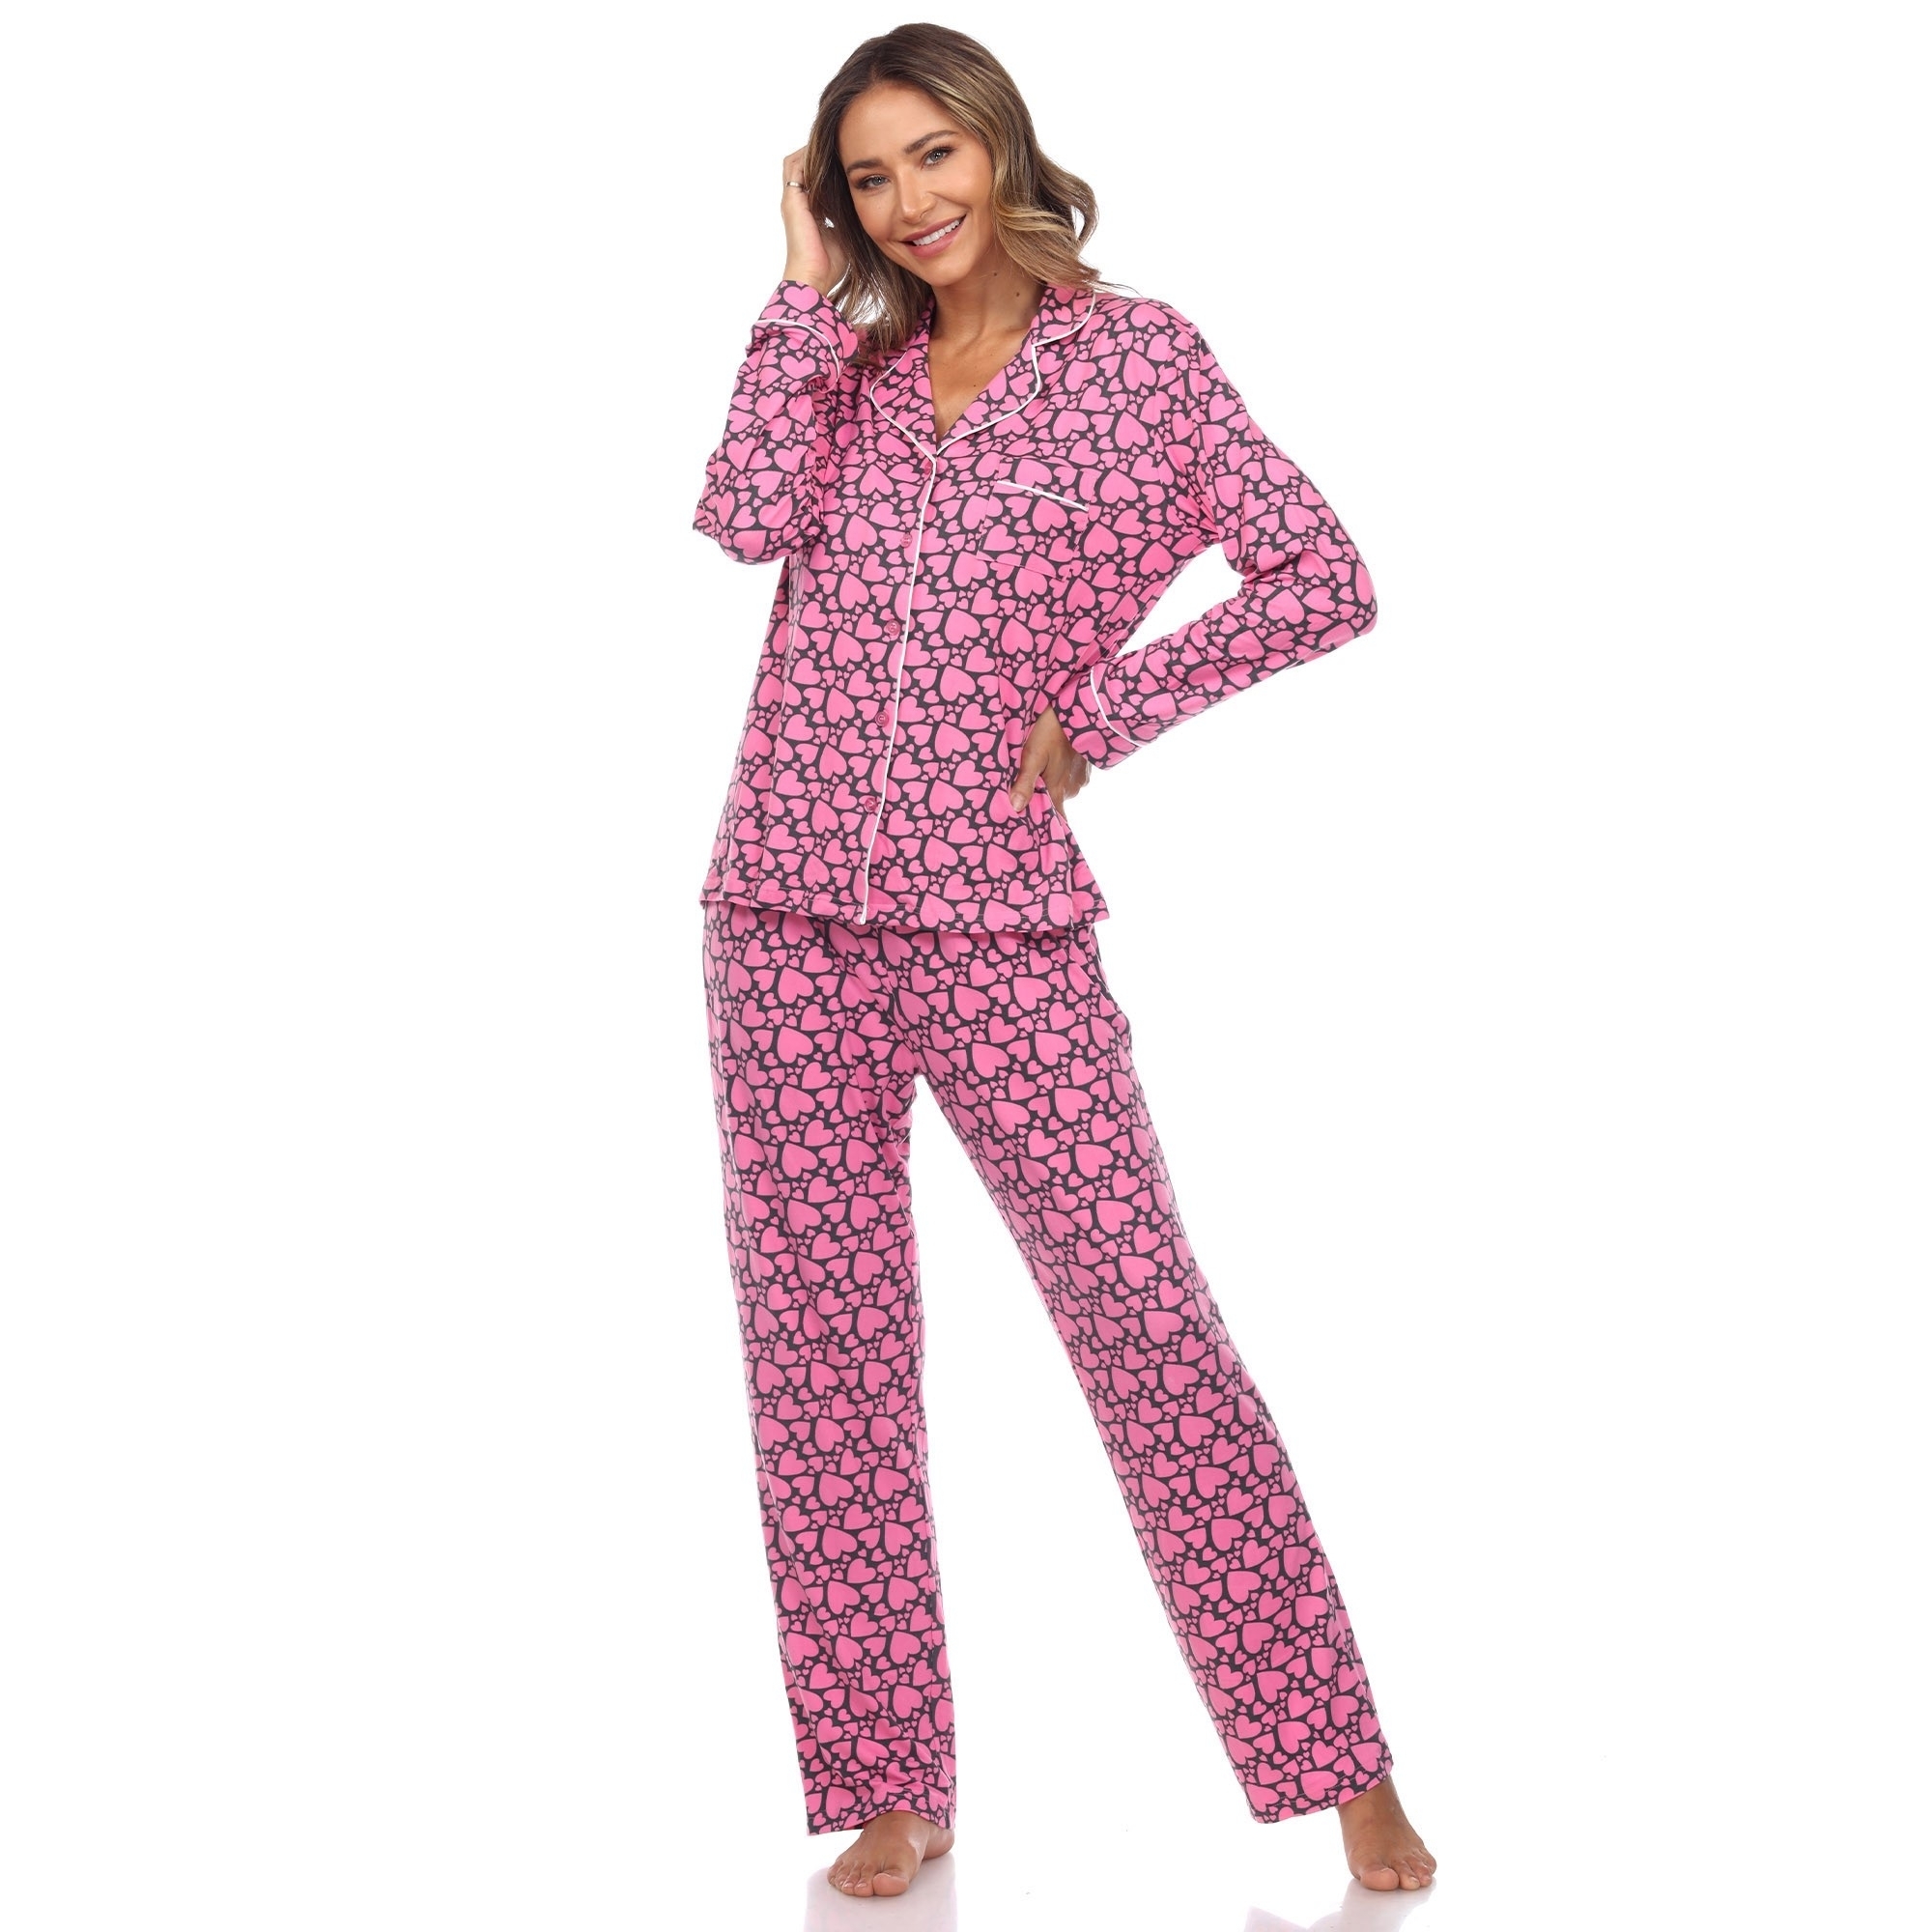 White Mark Women's Long Sleeve Hearts Pajama Set - Pink, X-Large